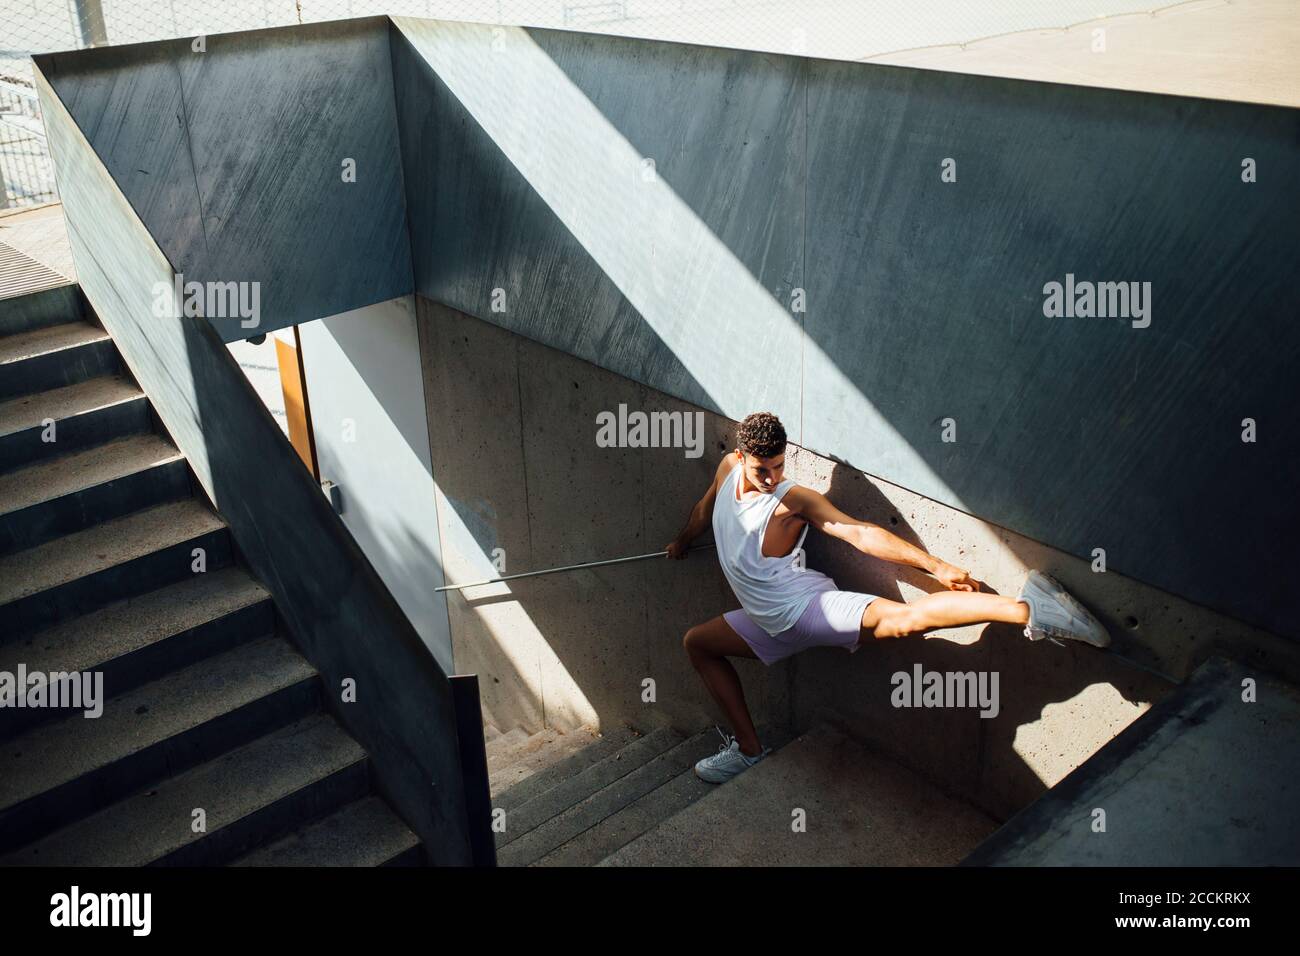 Jeune homme faisant un exercice gymnastique rythmique sur les marches par mur Banque D'Images